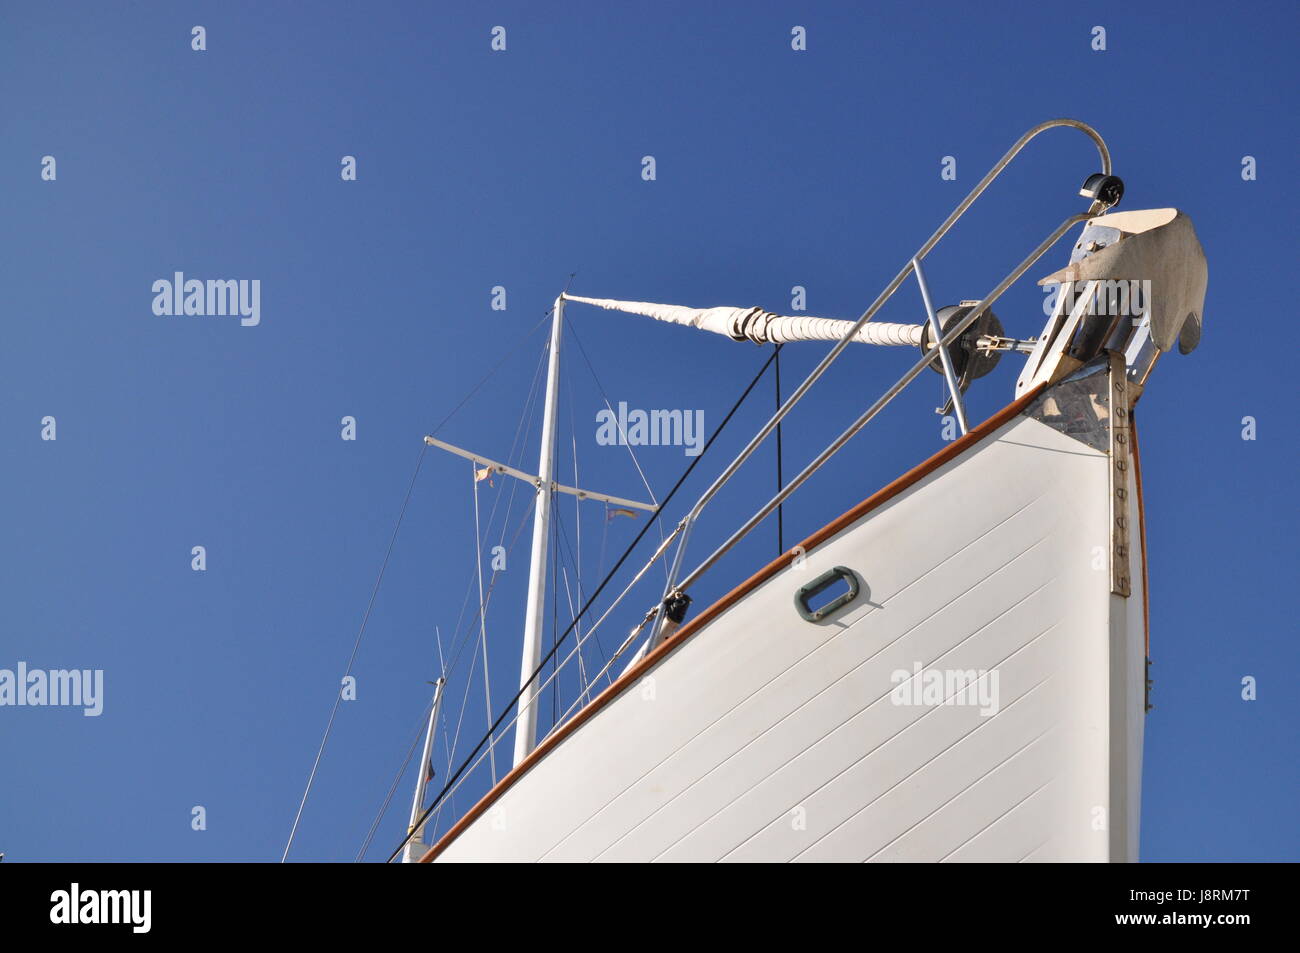 Detalle, navegación, navegación, yate, velero, velero, bote a remo, Foto de stock